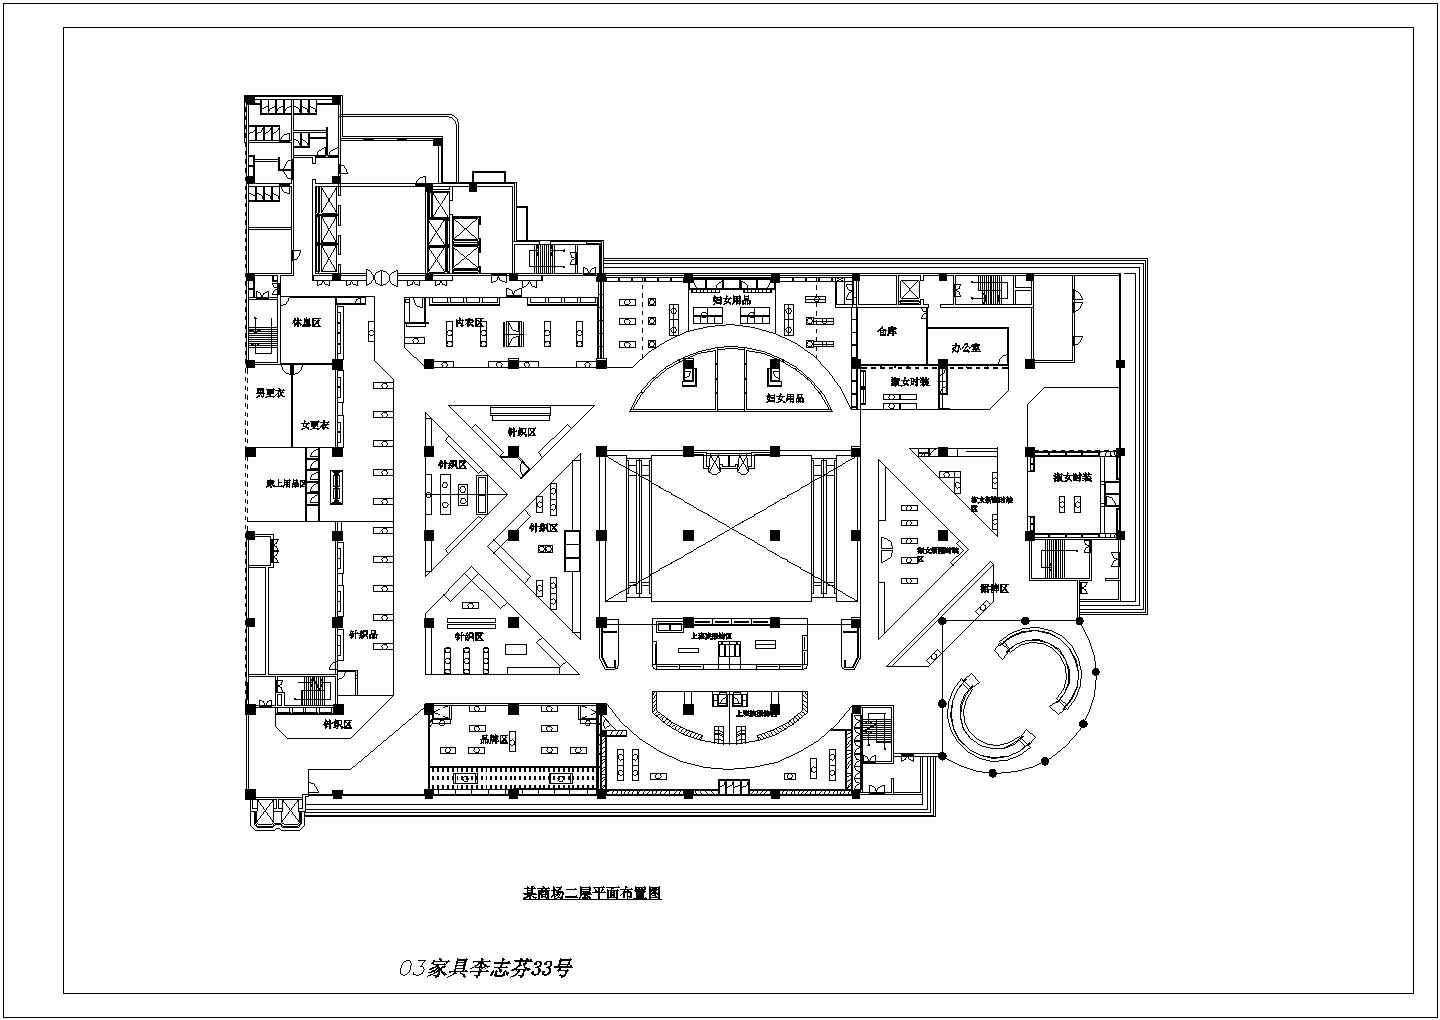 【岳阳市】某商场二层规划平面布置图